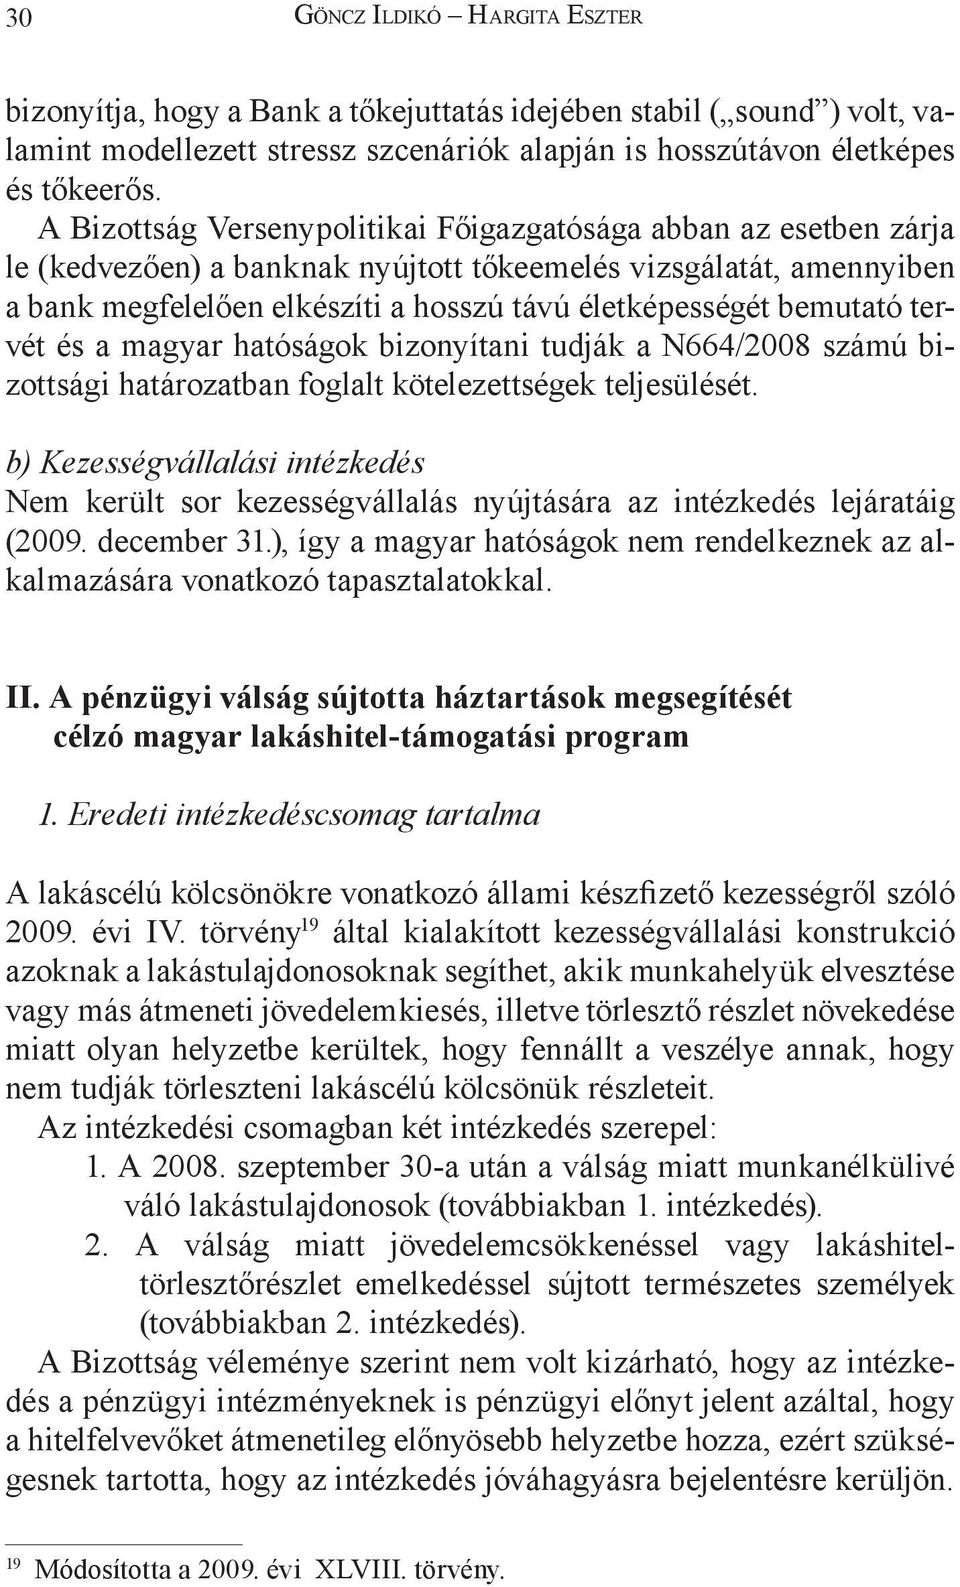 bemutató tervét és a magyar hatóságok bizonyítani tudják a N664/2008 számú bizottsági határozatban foglalt kötelezettségek teljesülését.